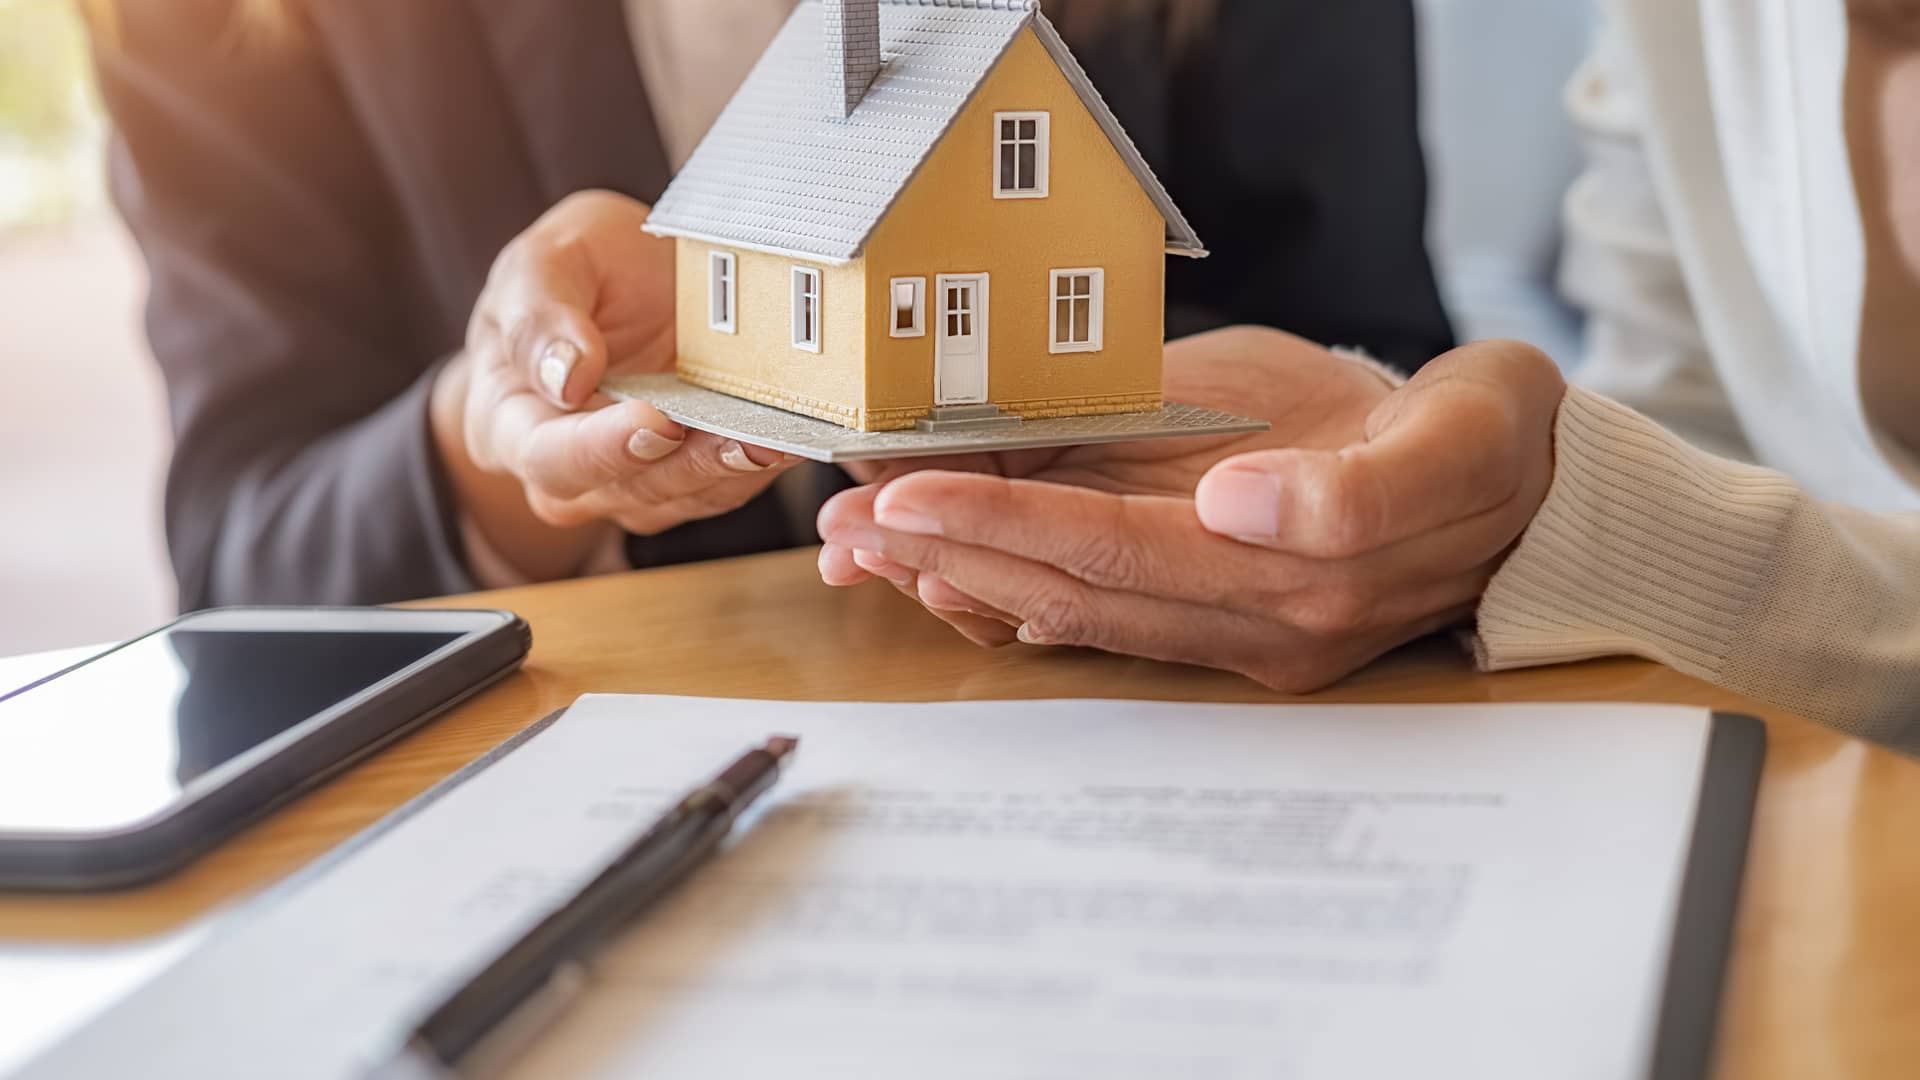 Una persona le entrega a otra una maqueta de una casa, sobre un contrato, representando las hipotecas entre particulares